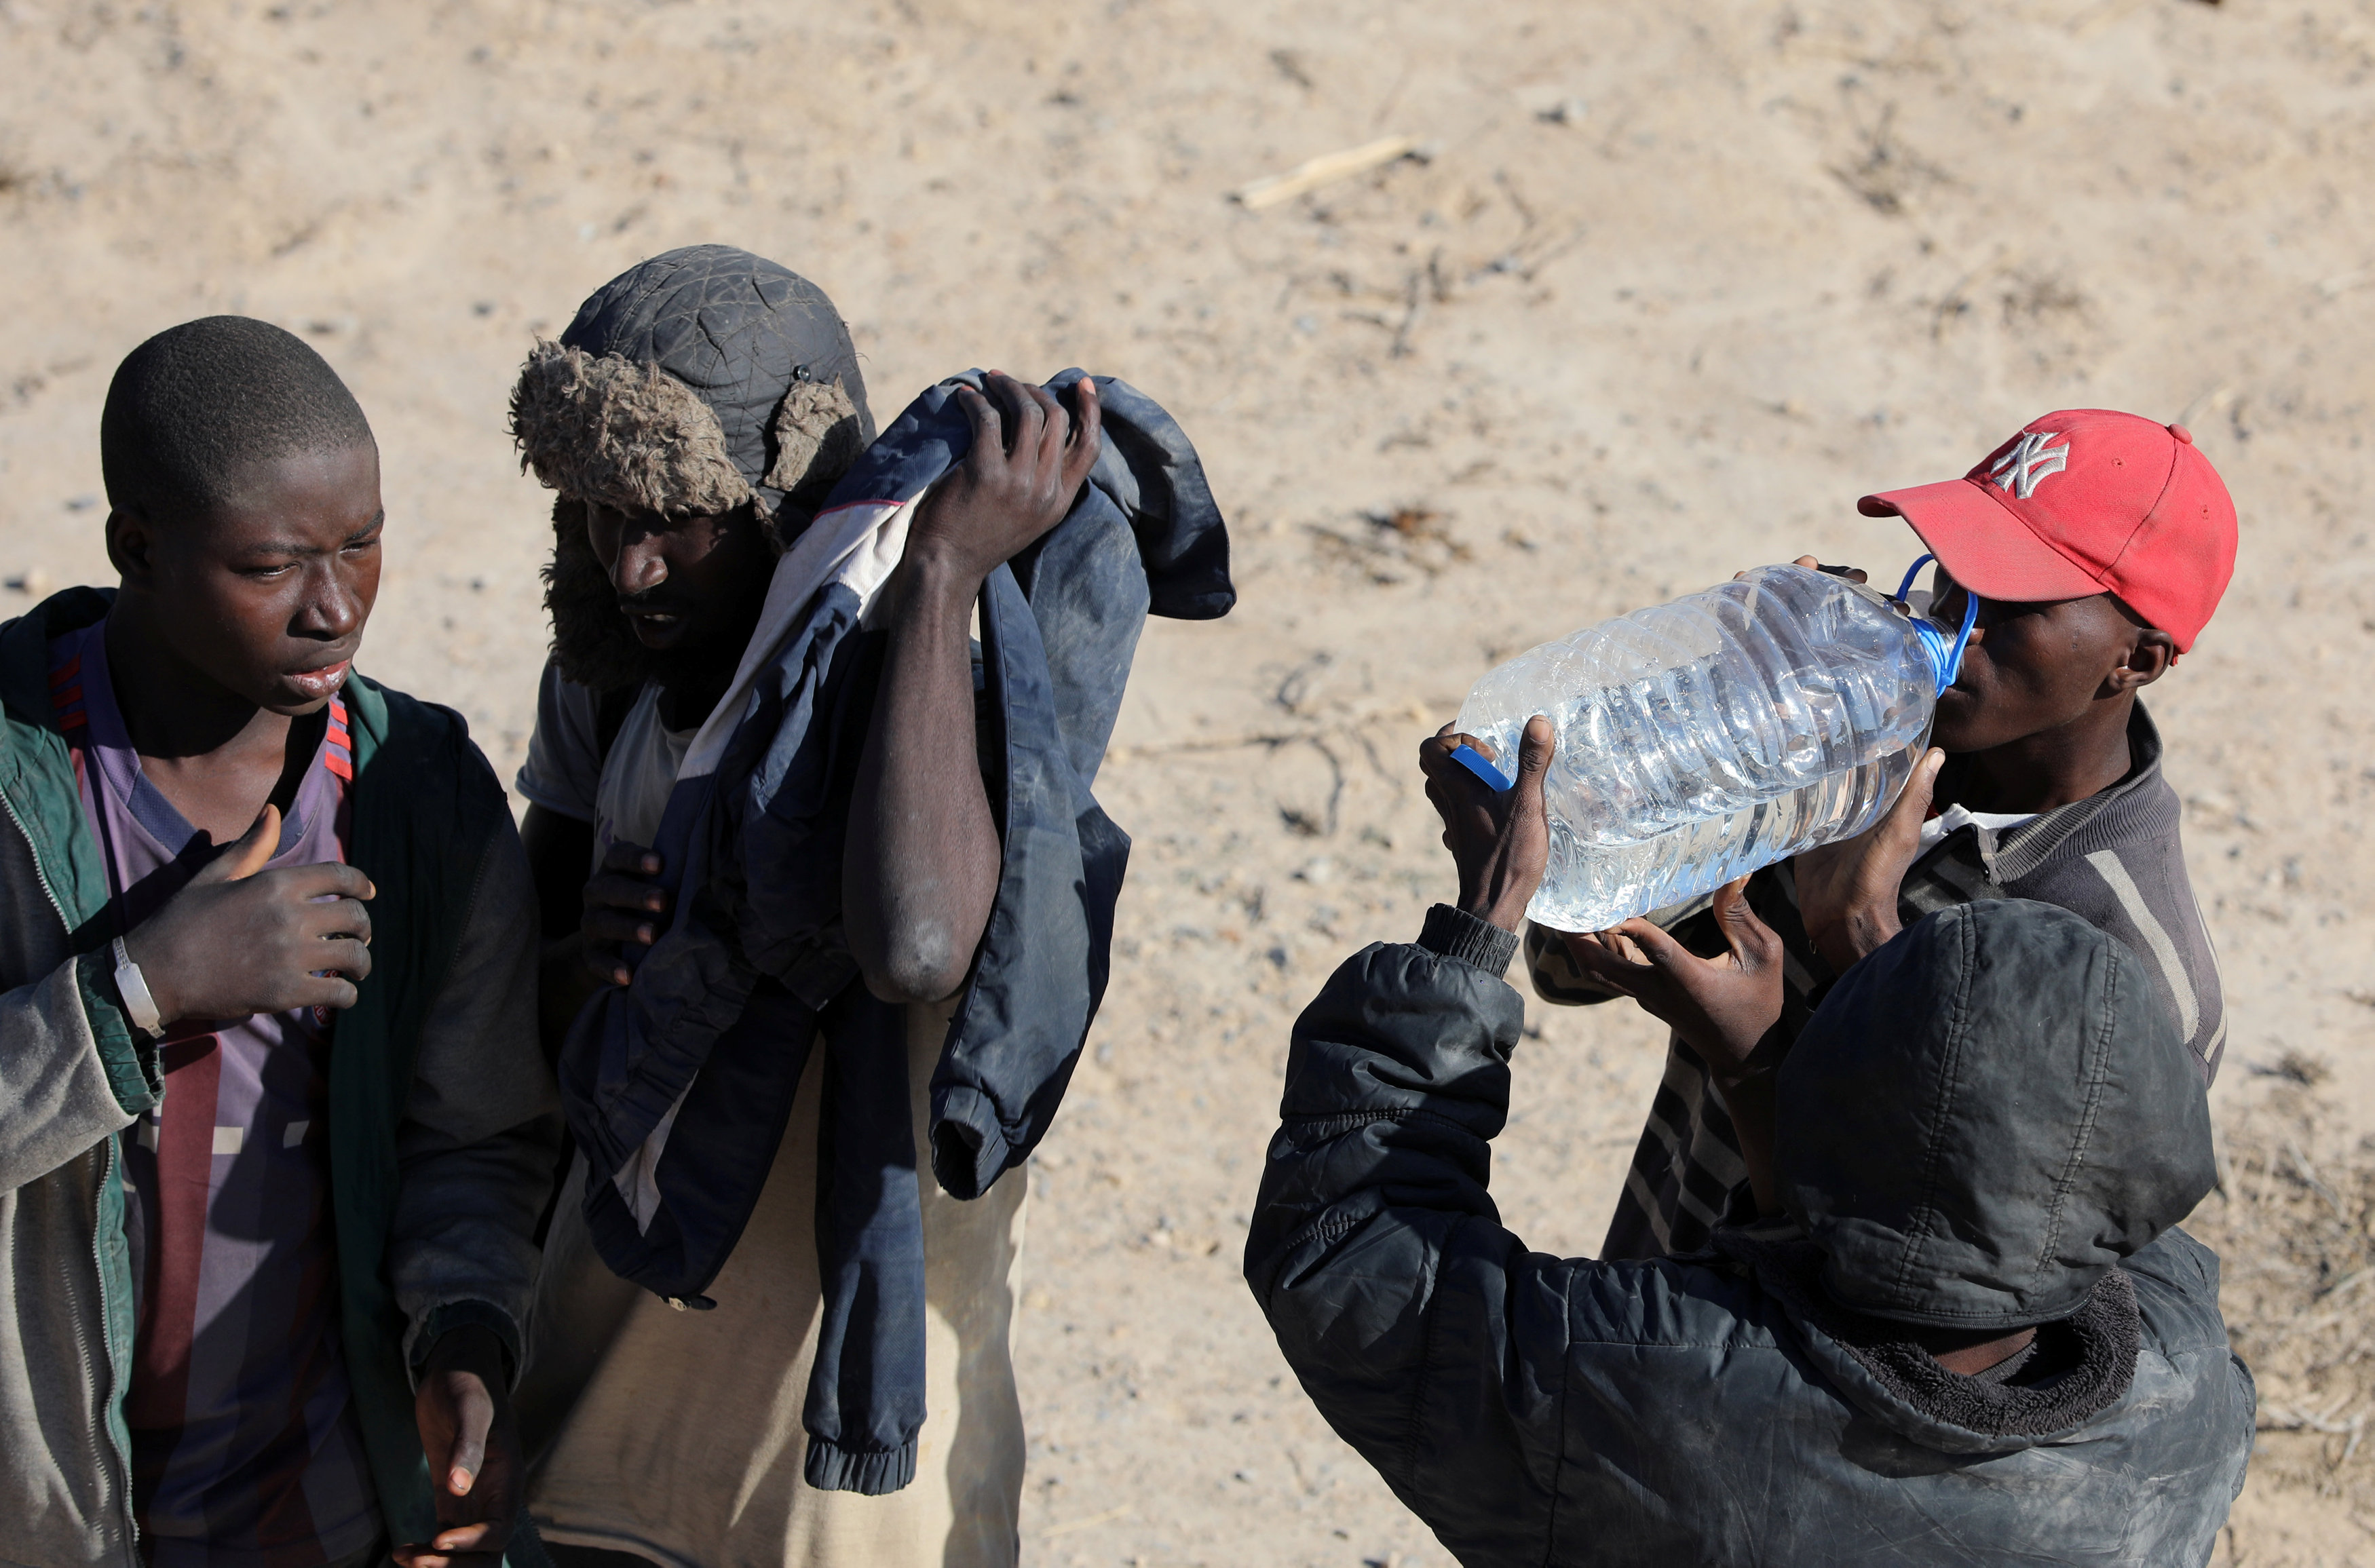 مهاجرون غير شرعيون يشربون المياه فى ليبيا